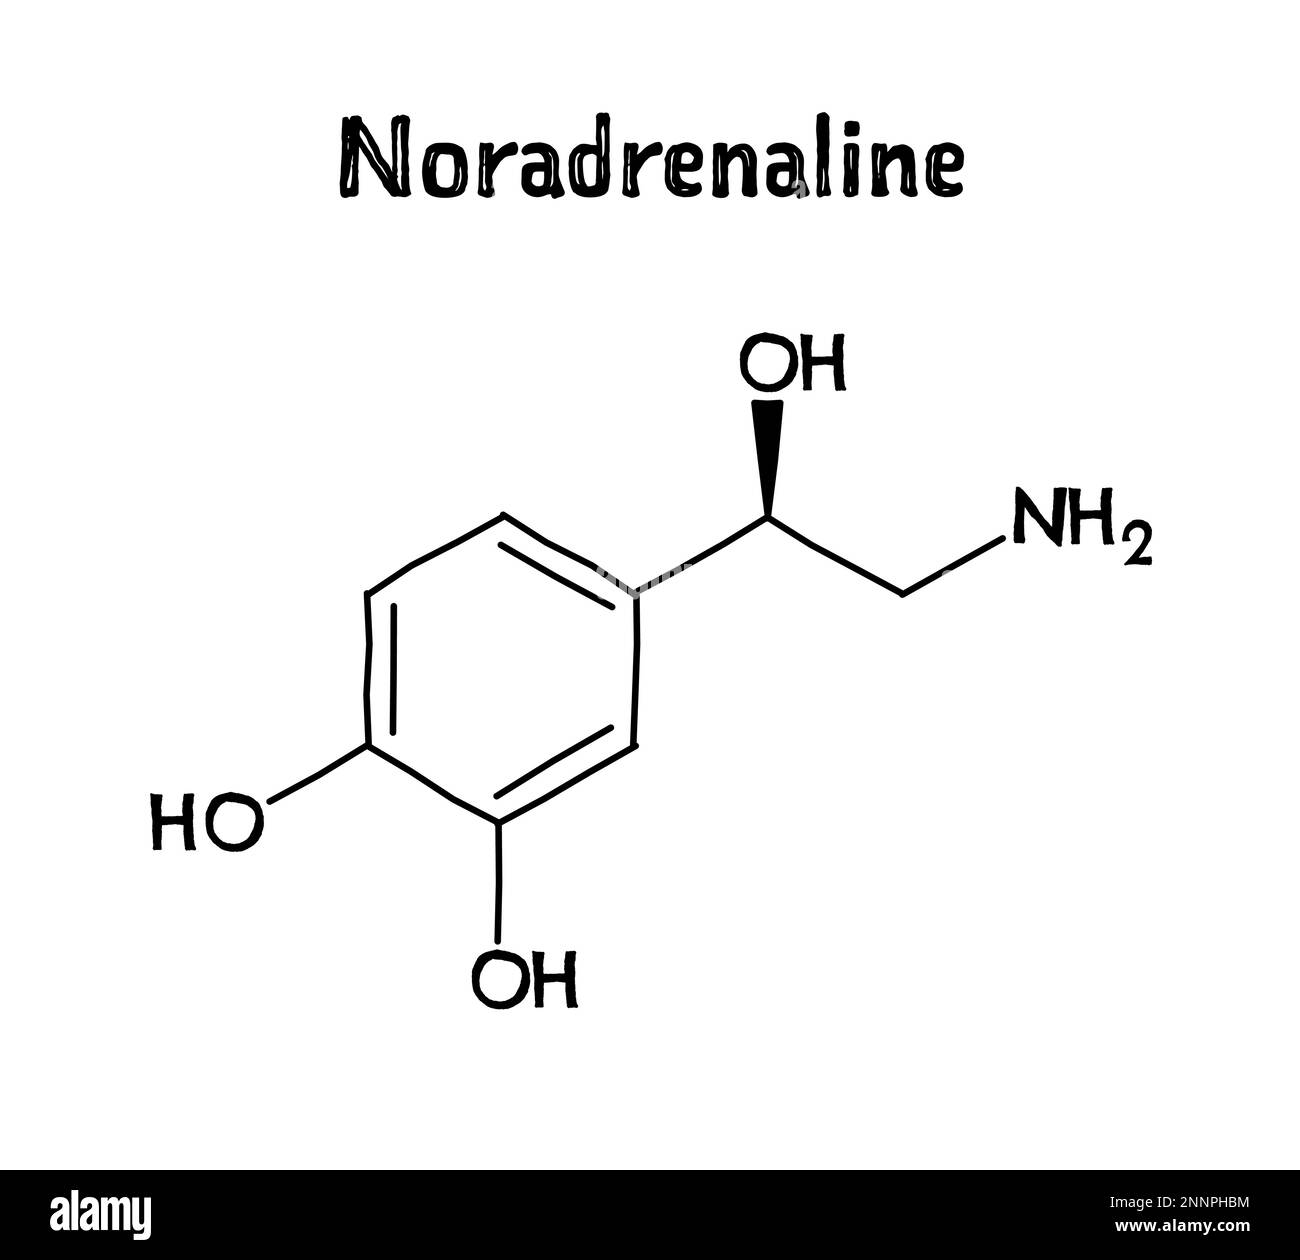 Struttura molecolare della noradrenalina. La noradrenalina, o norepinefrina, è neurotrasmettitore e ormone nel corpo umano. .Formula strutturale vettoriale del composto chimico. Penna nera stile disegnato a mano. Illustrazione Vettoriale